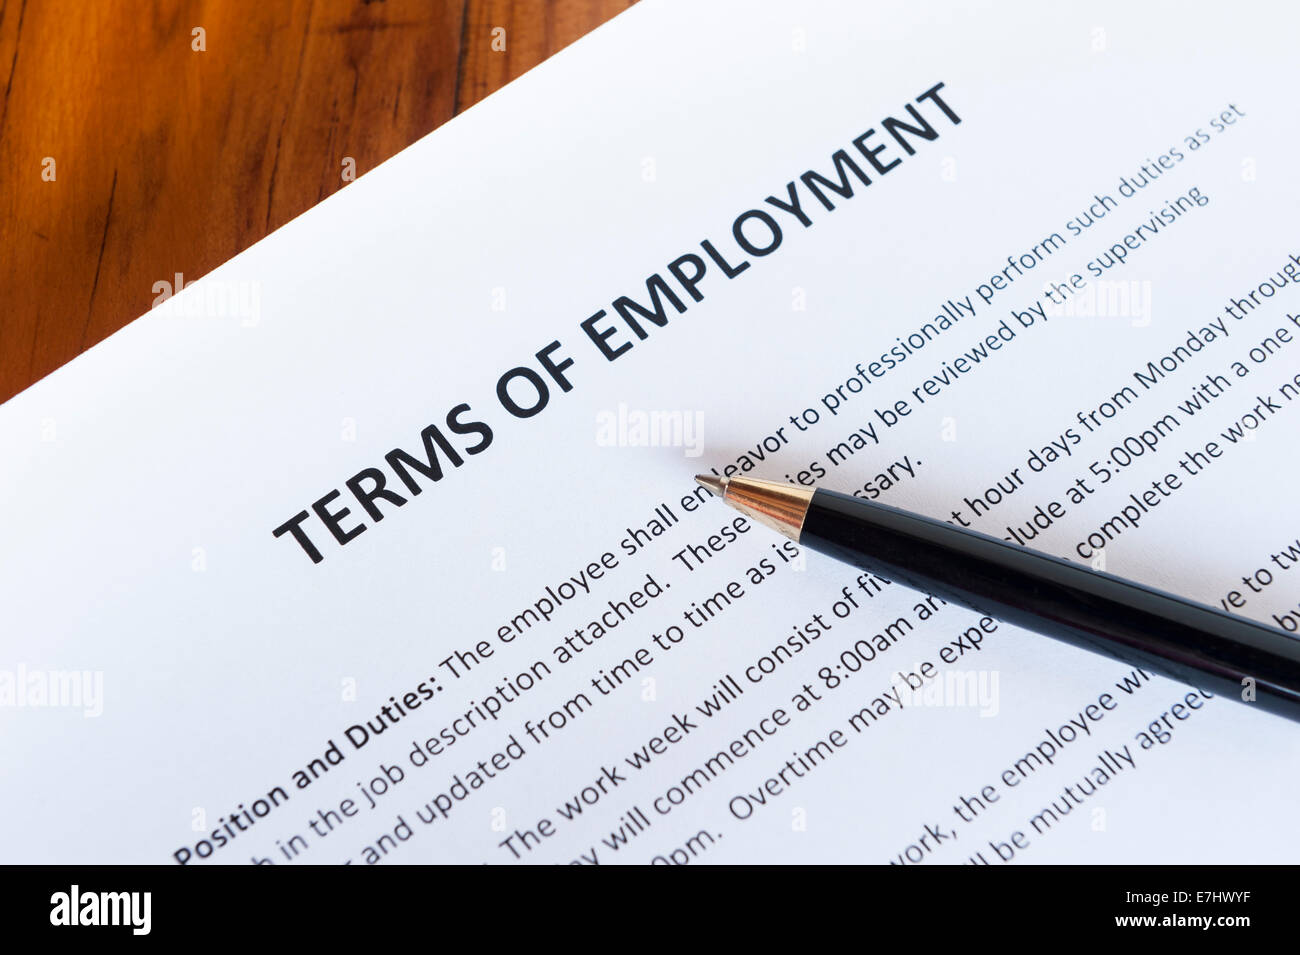 Vertrag skizziert die Bedingungen der Beschäftigung mit einem Stift Stockfoto